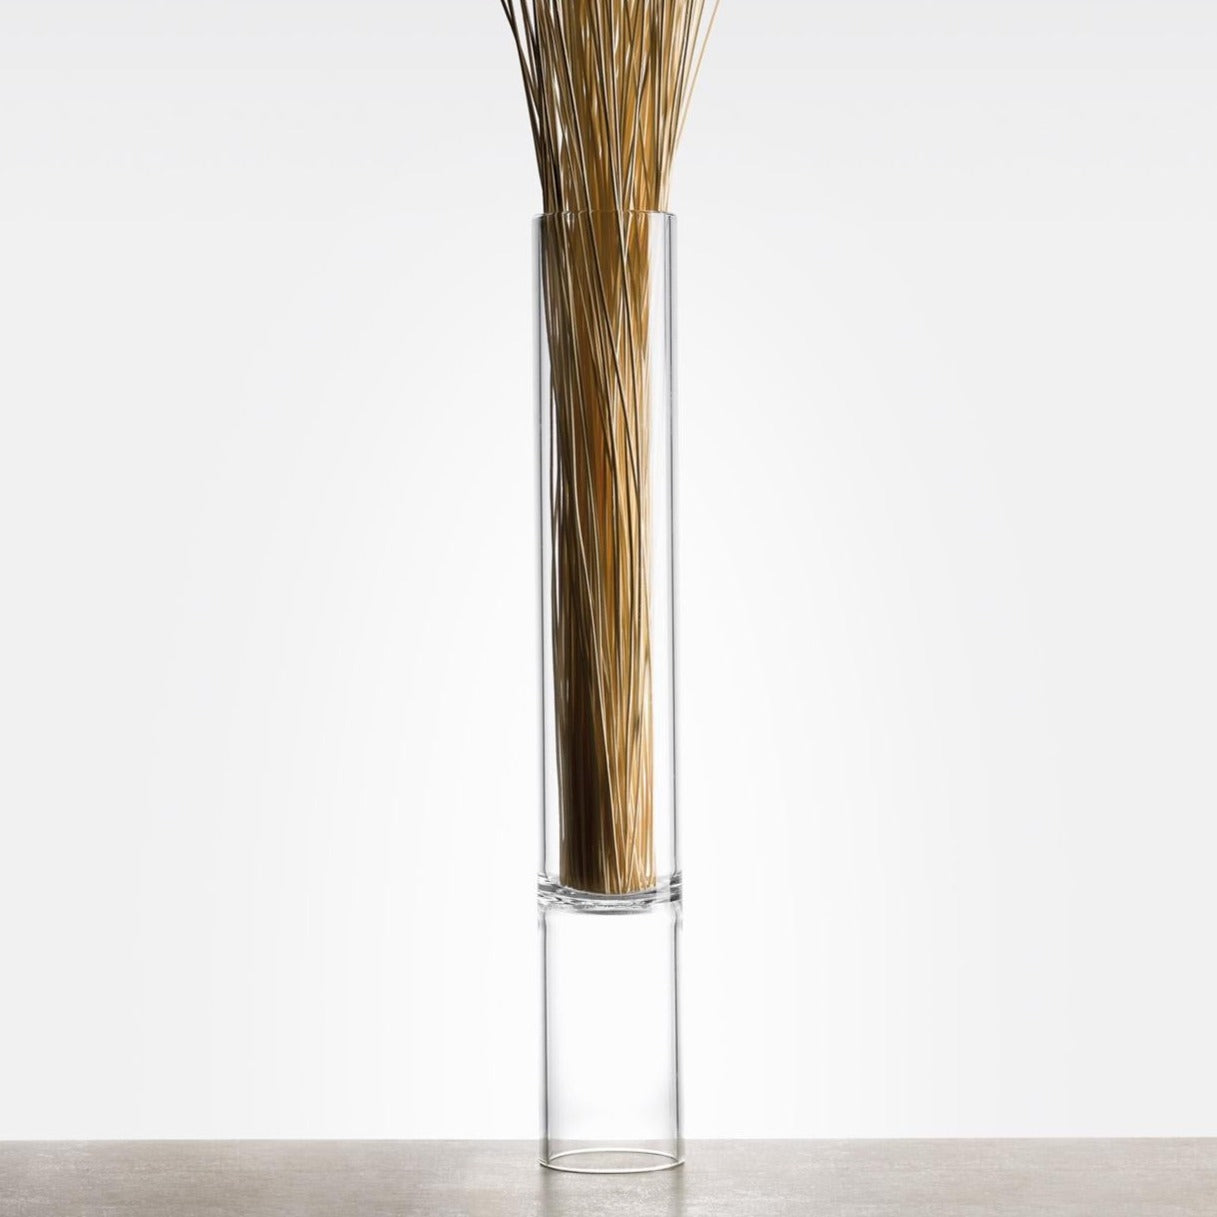 Tubular, bamboo shaped flower vase 